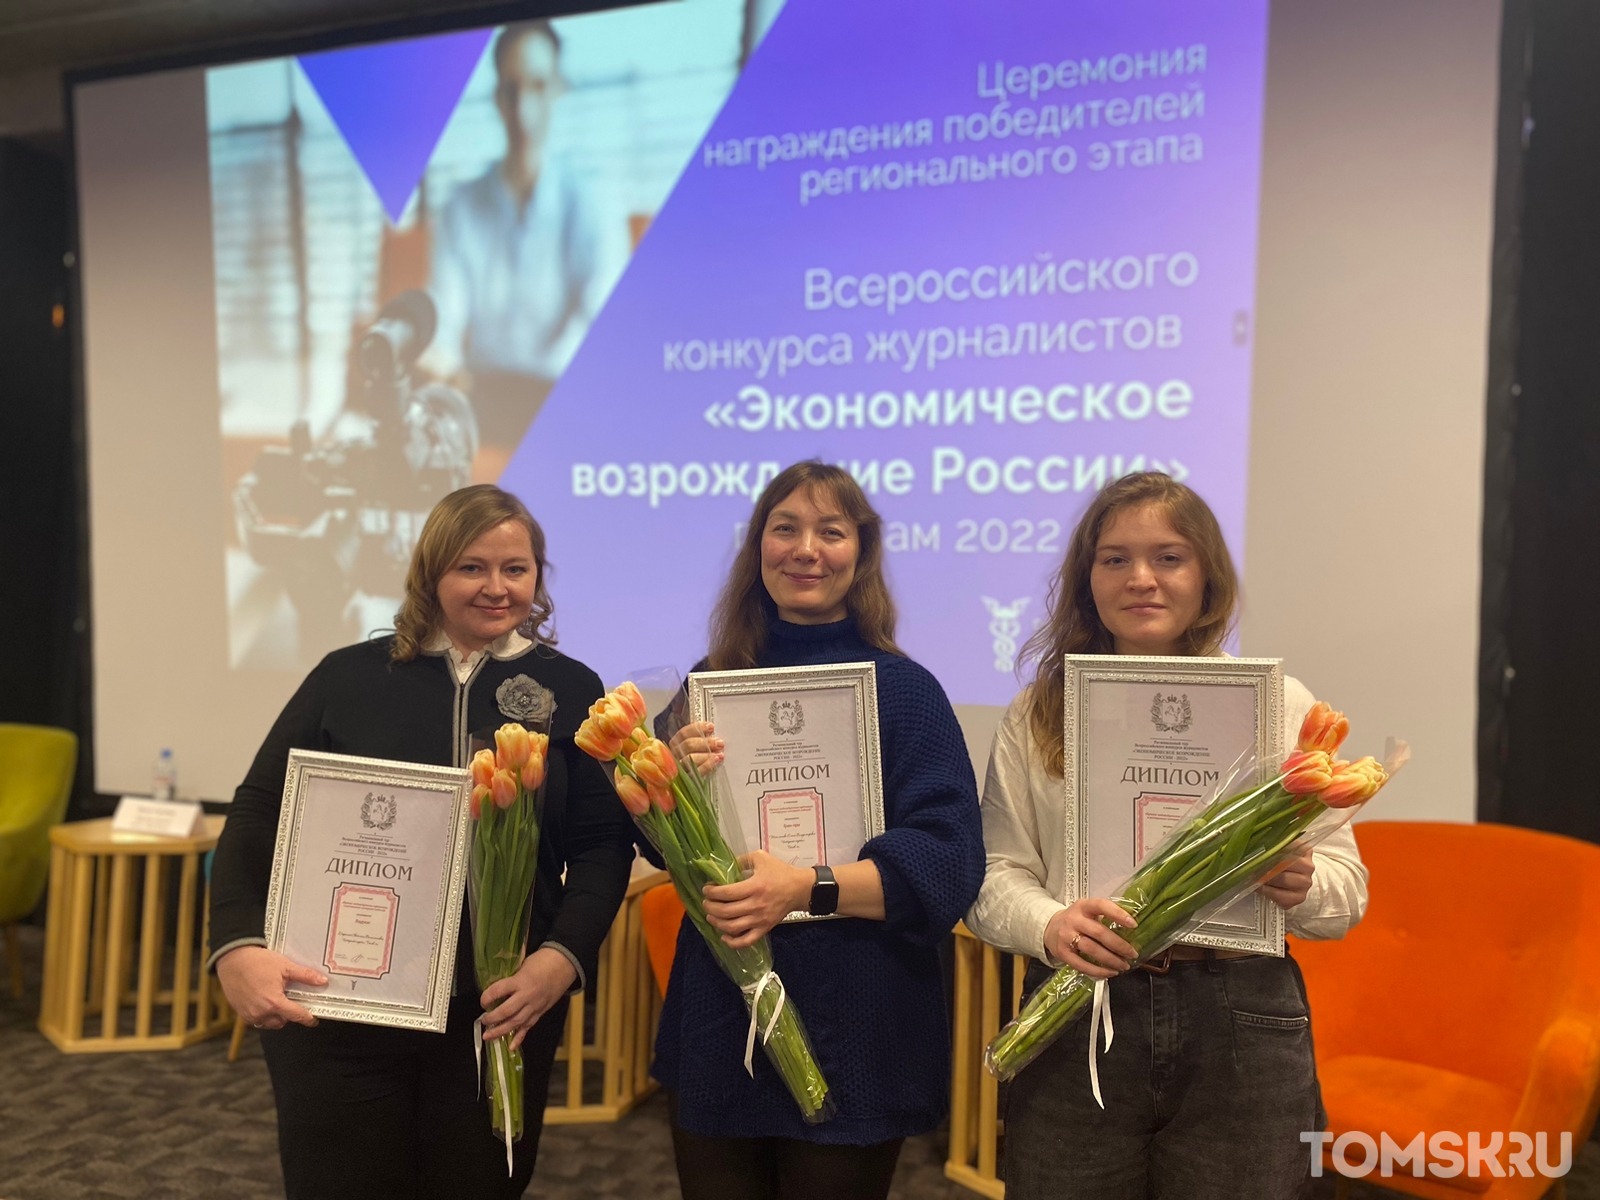 Журналисты Tomsk.ru  выиграли три награды конкурса «Экономическое возрождение России»